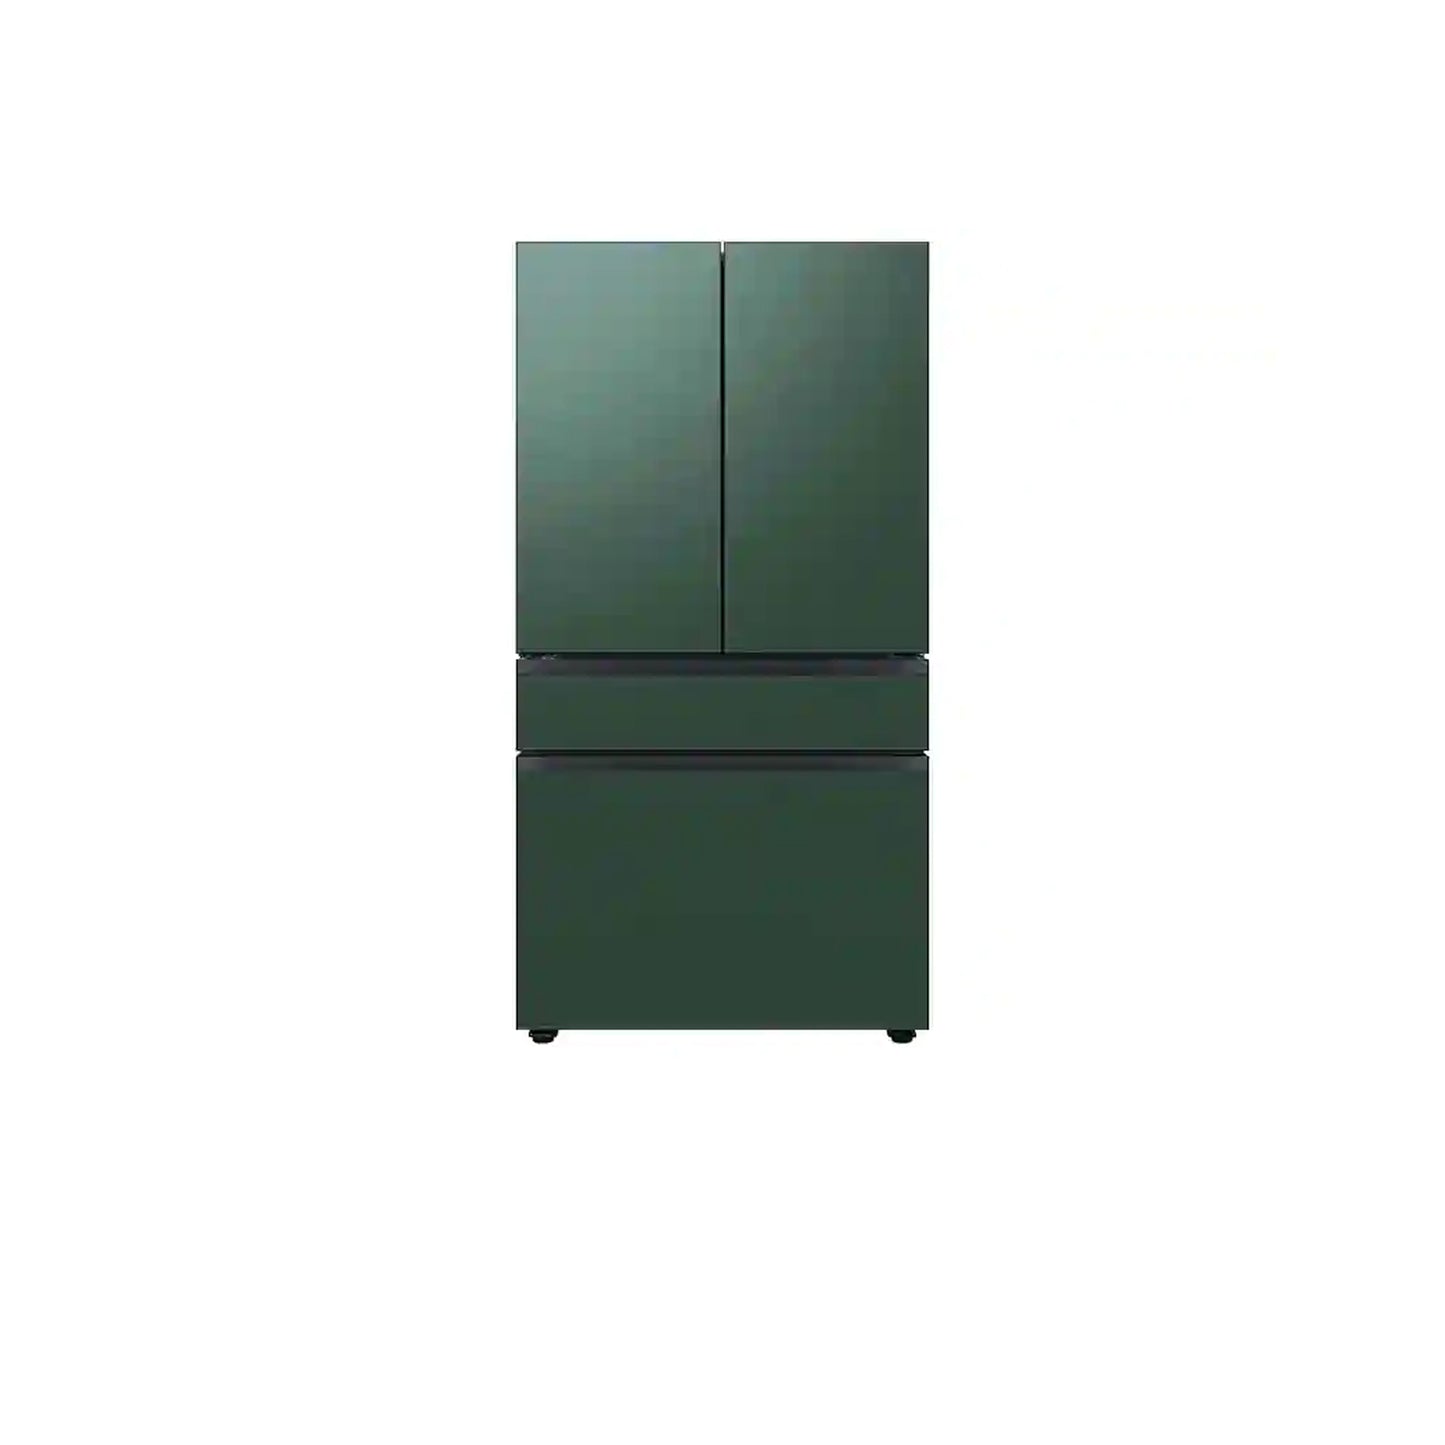 ثلاجة مخصصة بباب فرنسي بأربعة أبواب (23 قدمًا مكعبًا) مع ألوان لوحة الباب القابلة للتخصيص ومركز المشروبات™ بزجاج أصفر شروق الشمس. 